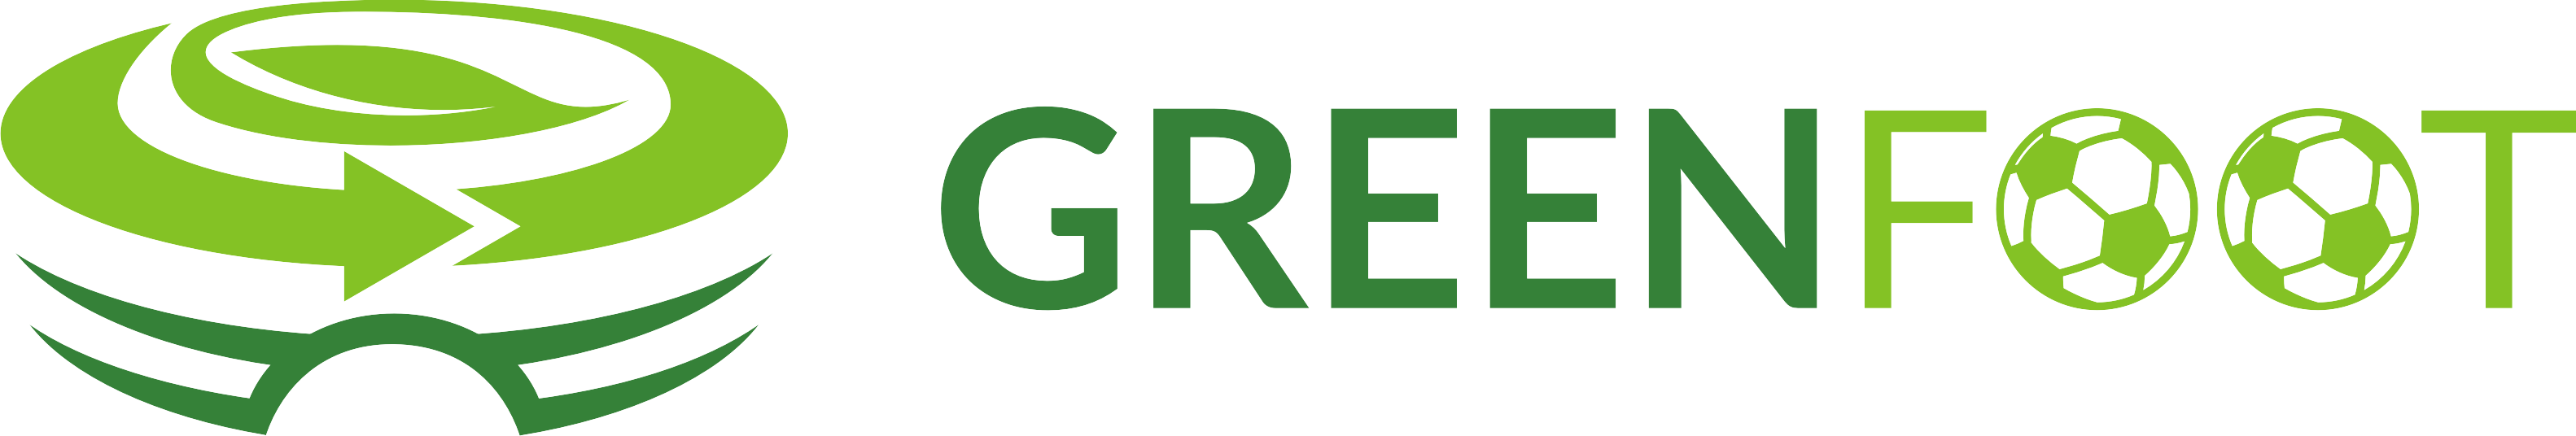 greenfoot org